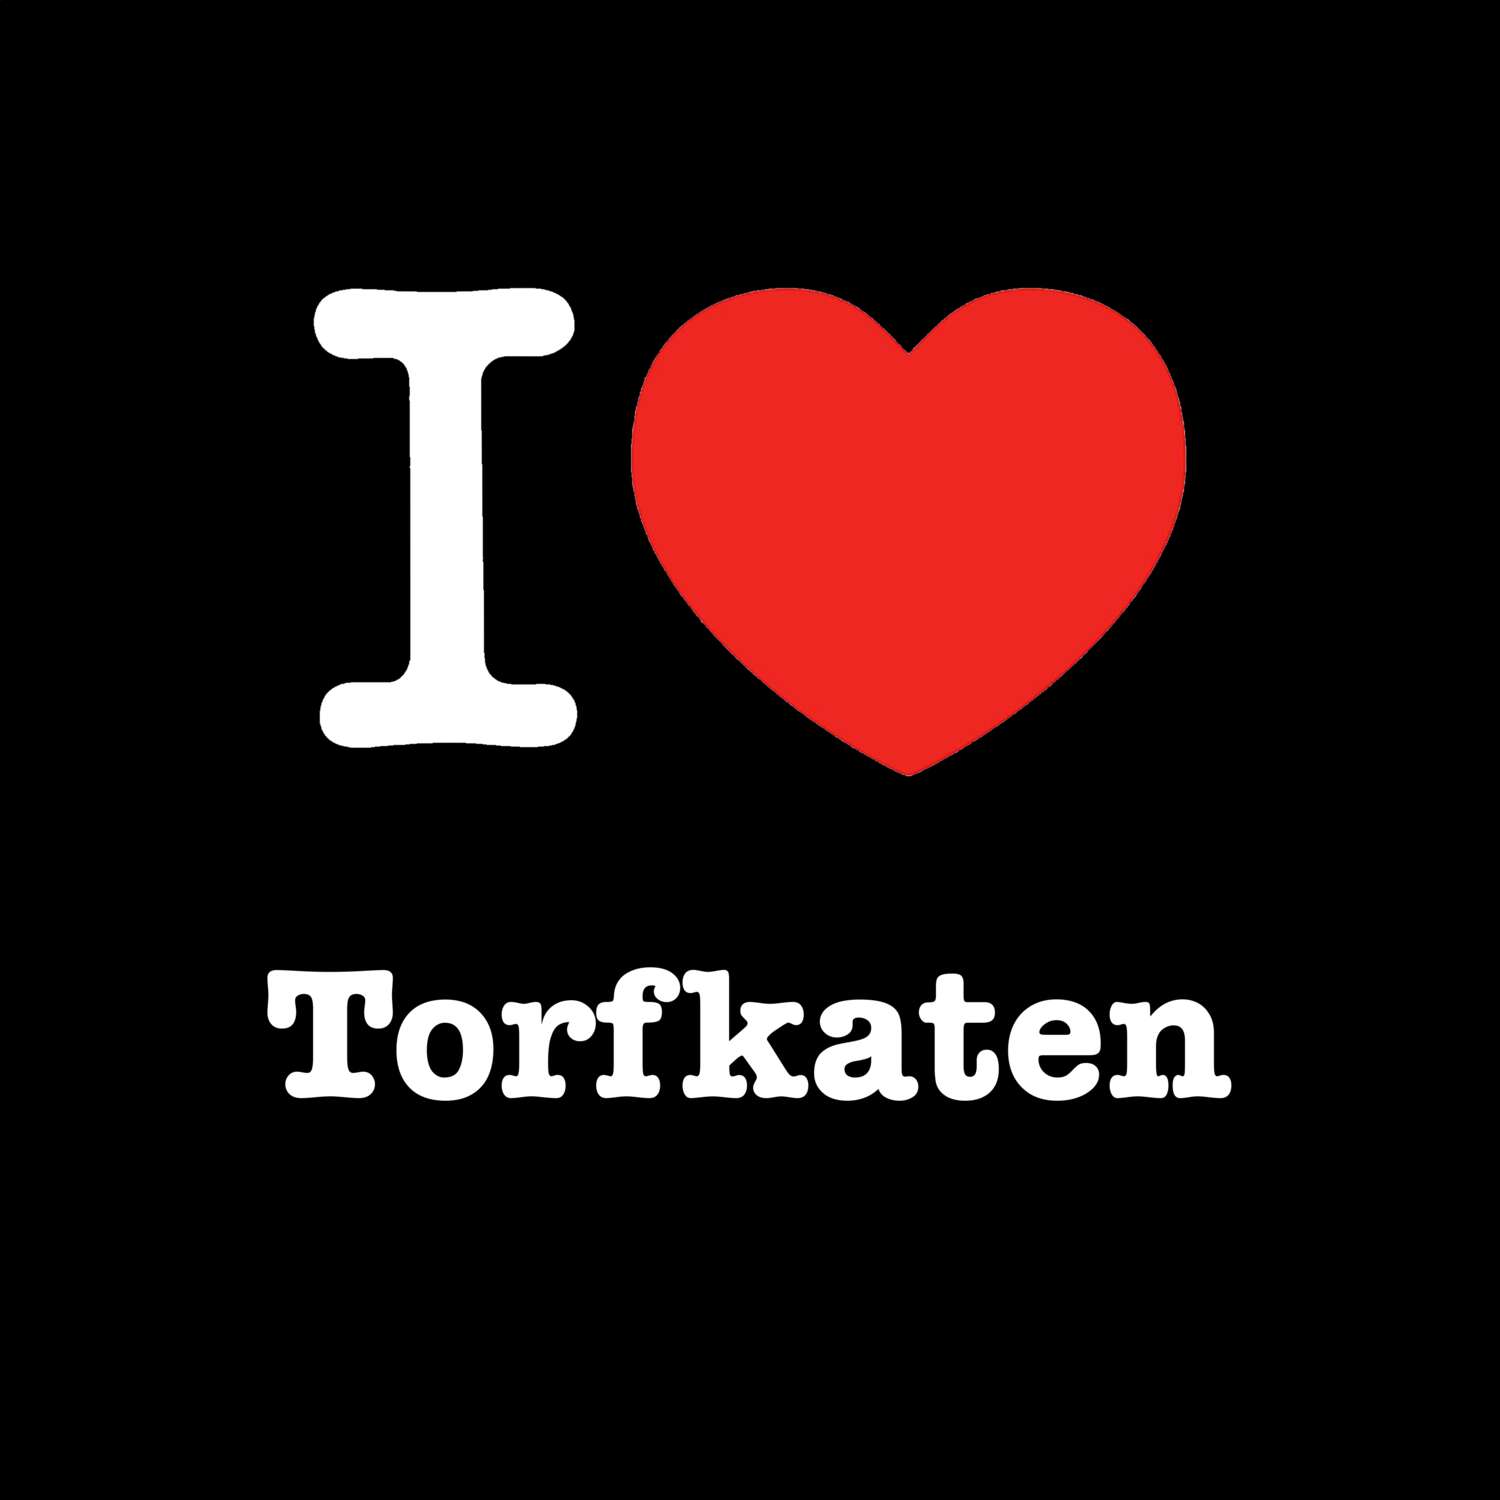 Torfkaten T-Shirt »I love«